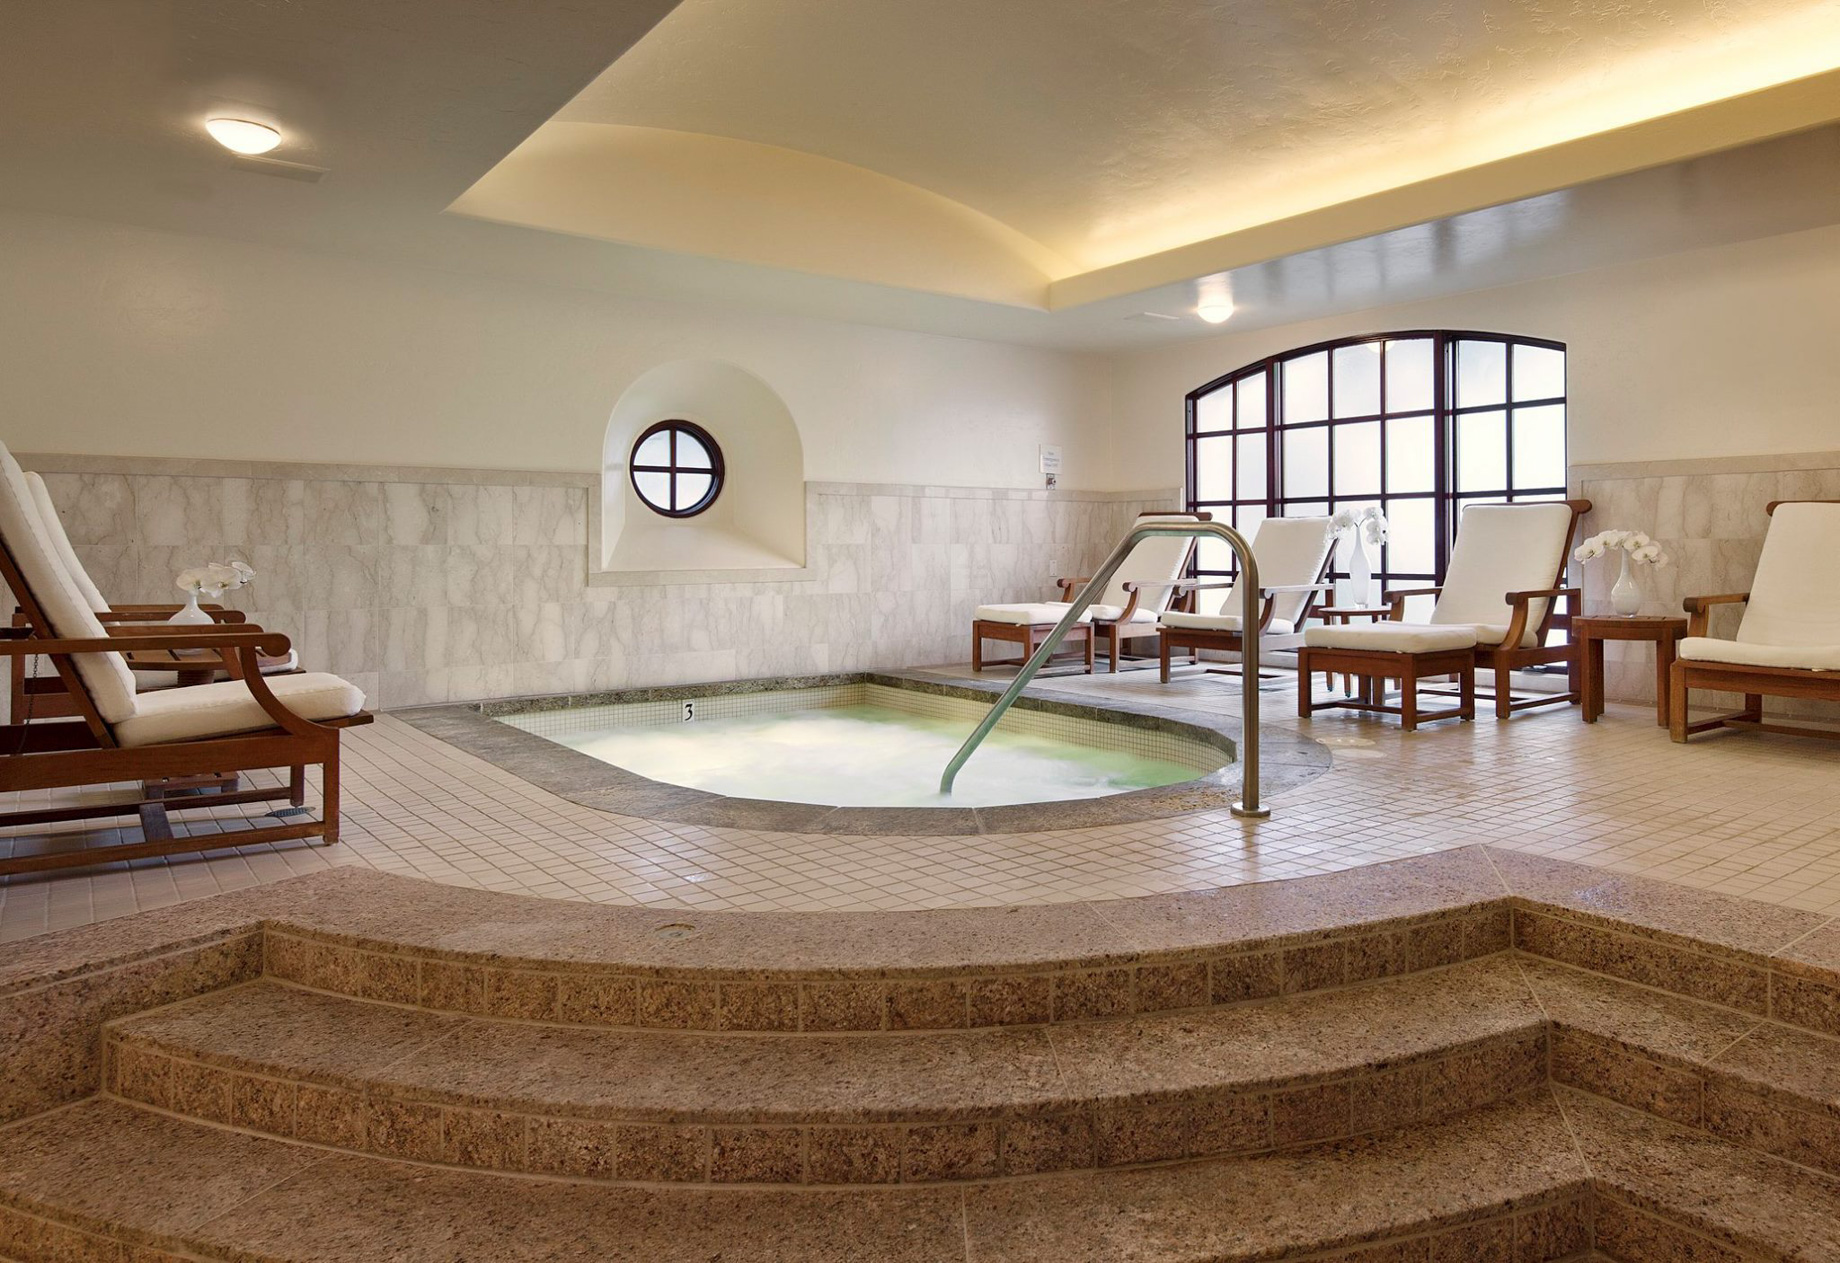 The Ritz-Carlton Bacara, Santa Barbara Resort – Santa Barbara, CA, USA – Spa Relaxation Pool